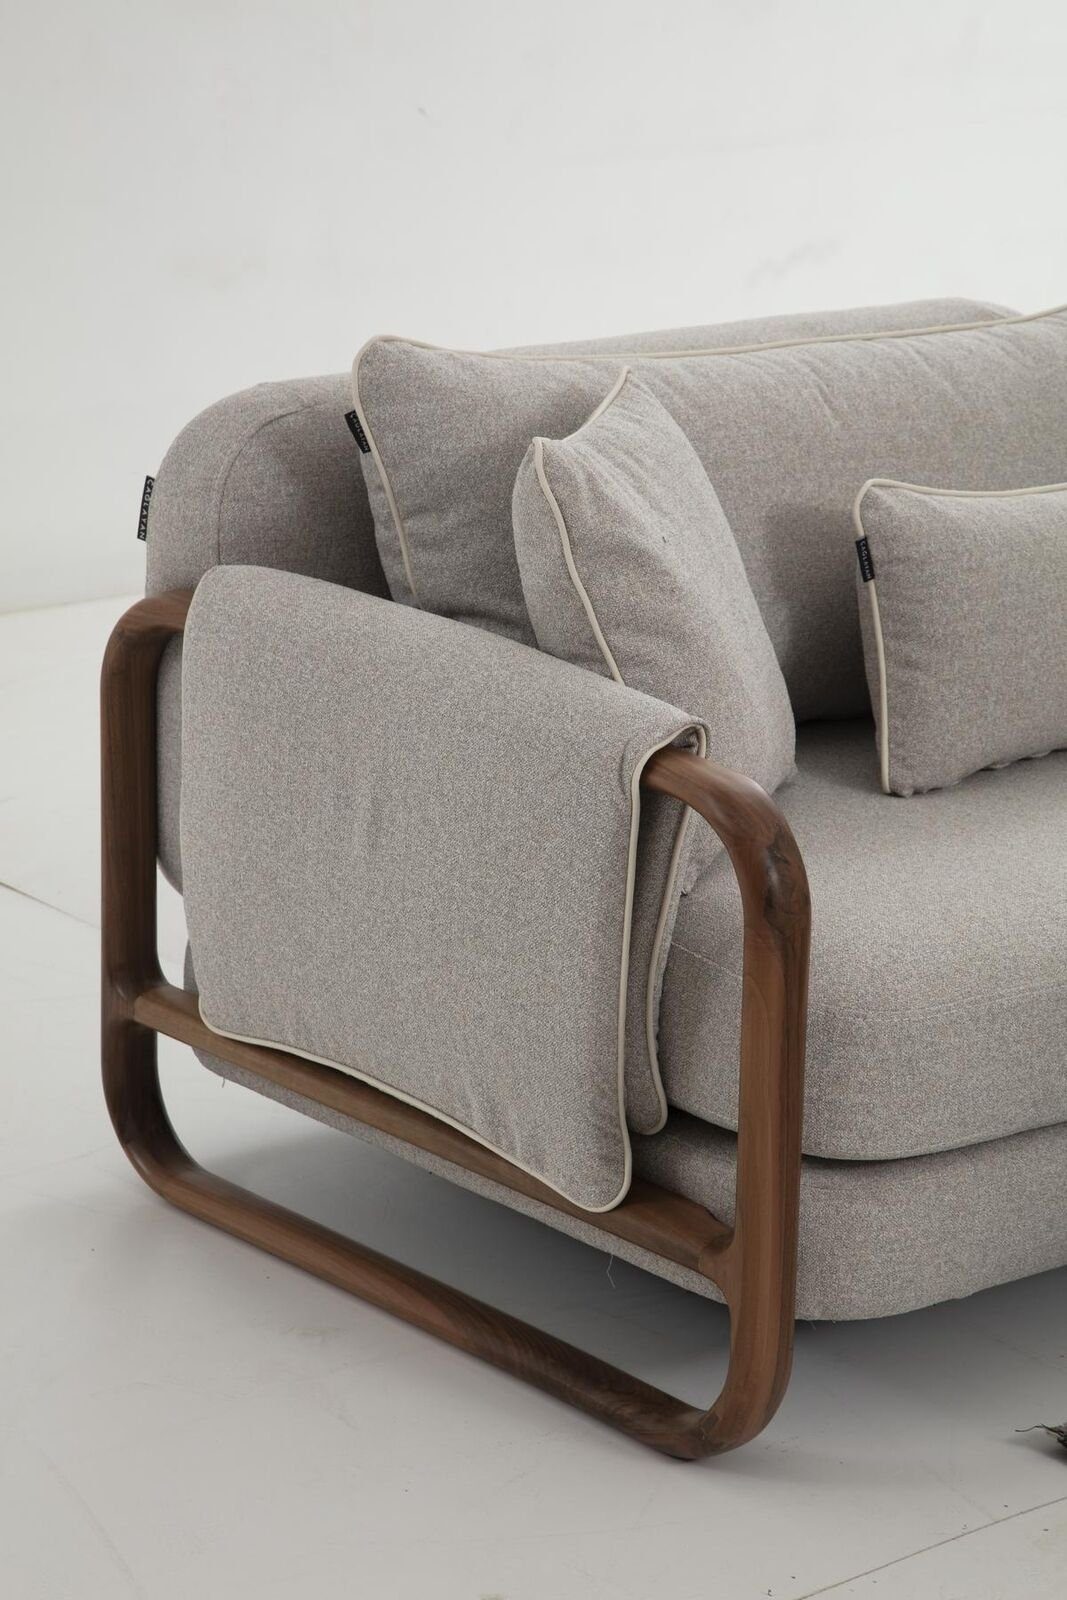 Neu, 1 Sofas Teile, Stoff 3 Design in Grau Dreisitzer Modern Sofa Wohnzimmer Europa 3-Sitzer JVmoebel Sitzer Made